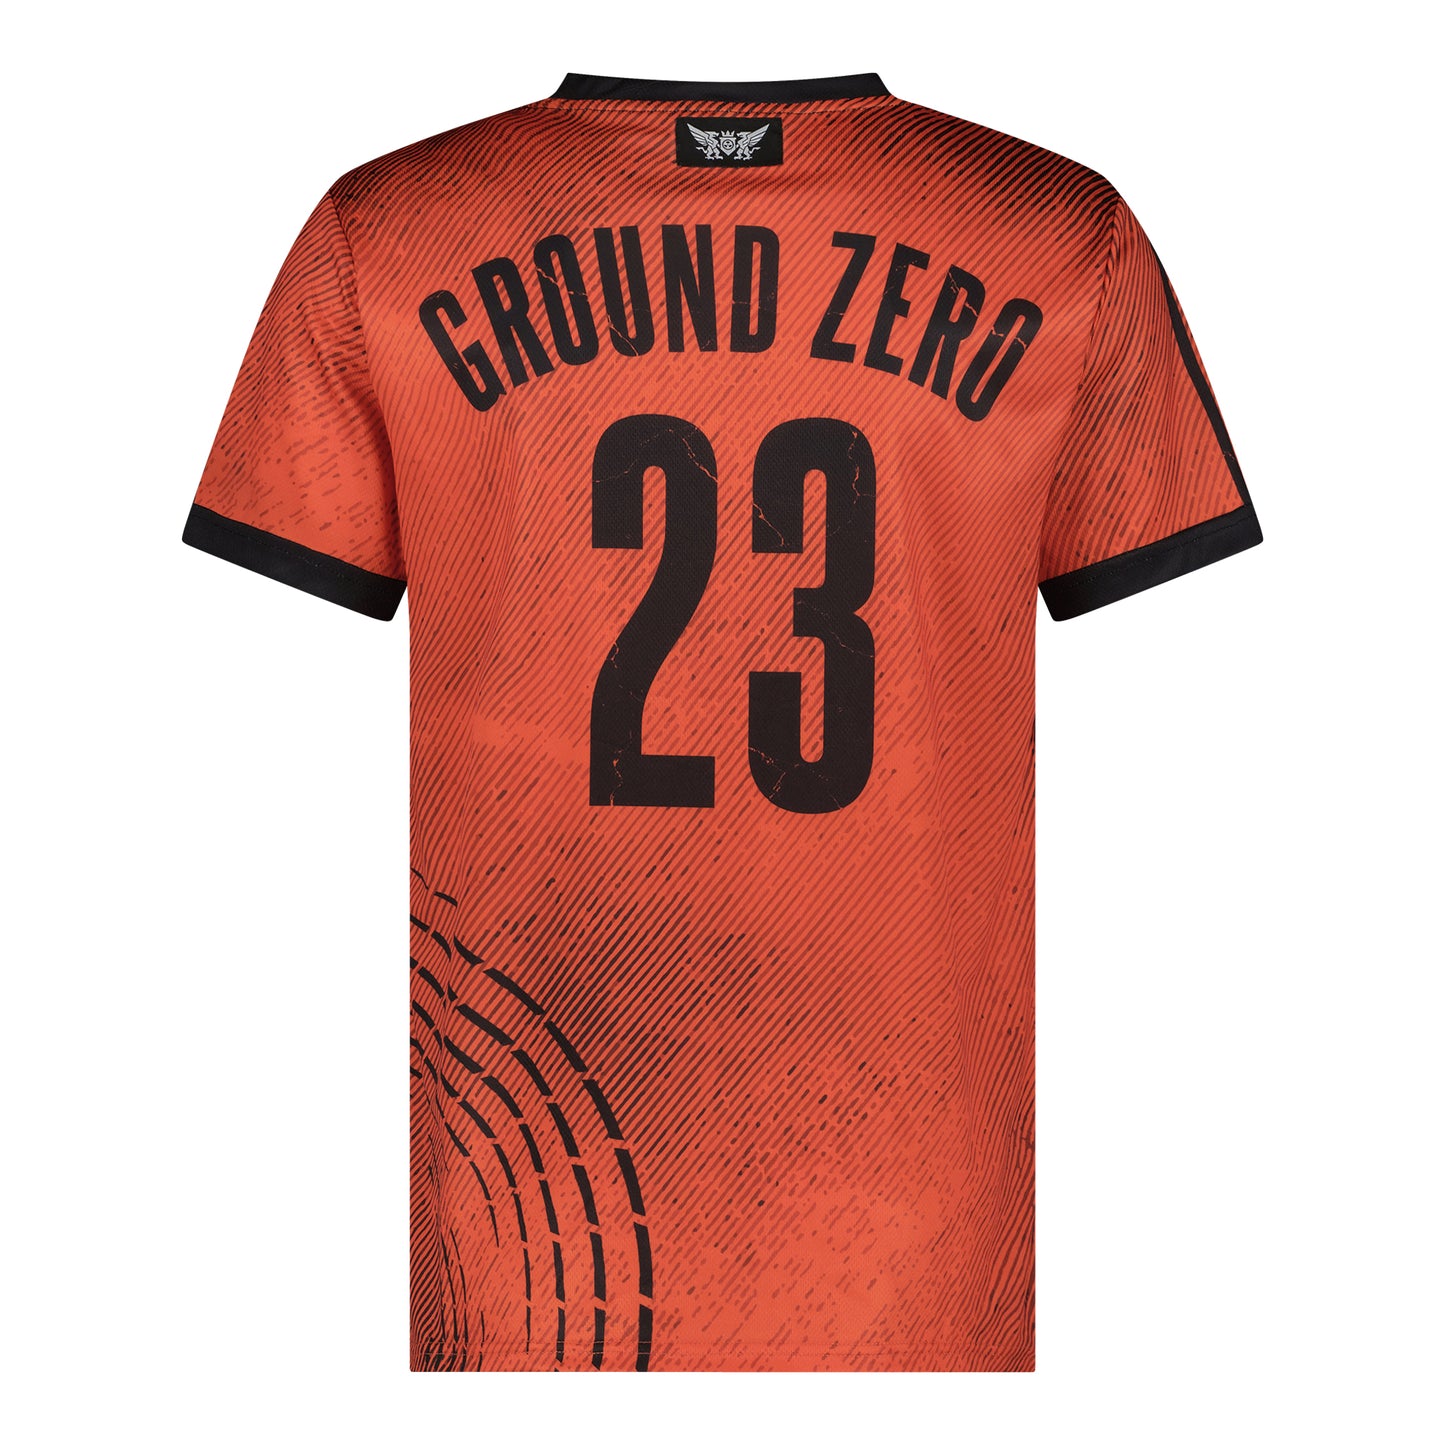 Groundzero Soccershirt dark descent